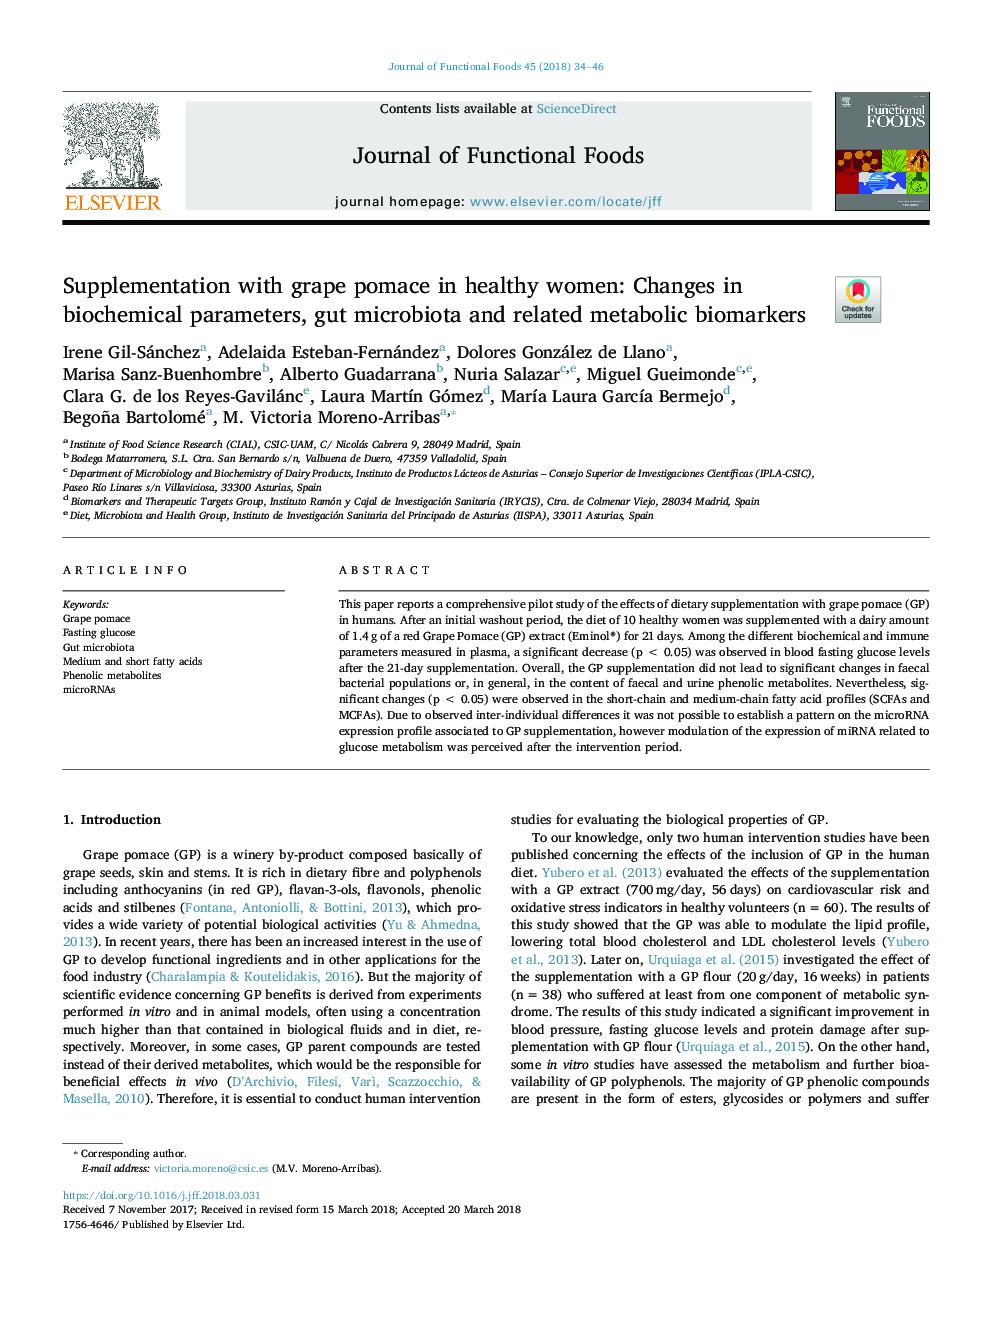 مکمل با عصاره انگور در زنان سالم: تغییرات پارامترهای بیوشیمیایی، میکروبیوتاسیون روده و معیارهای متابولیک مرتبط 